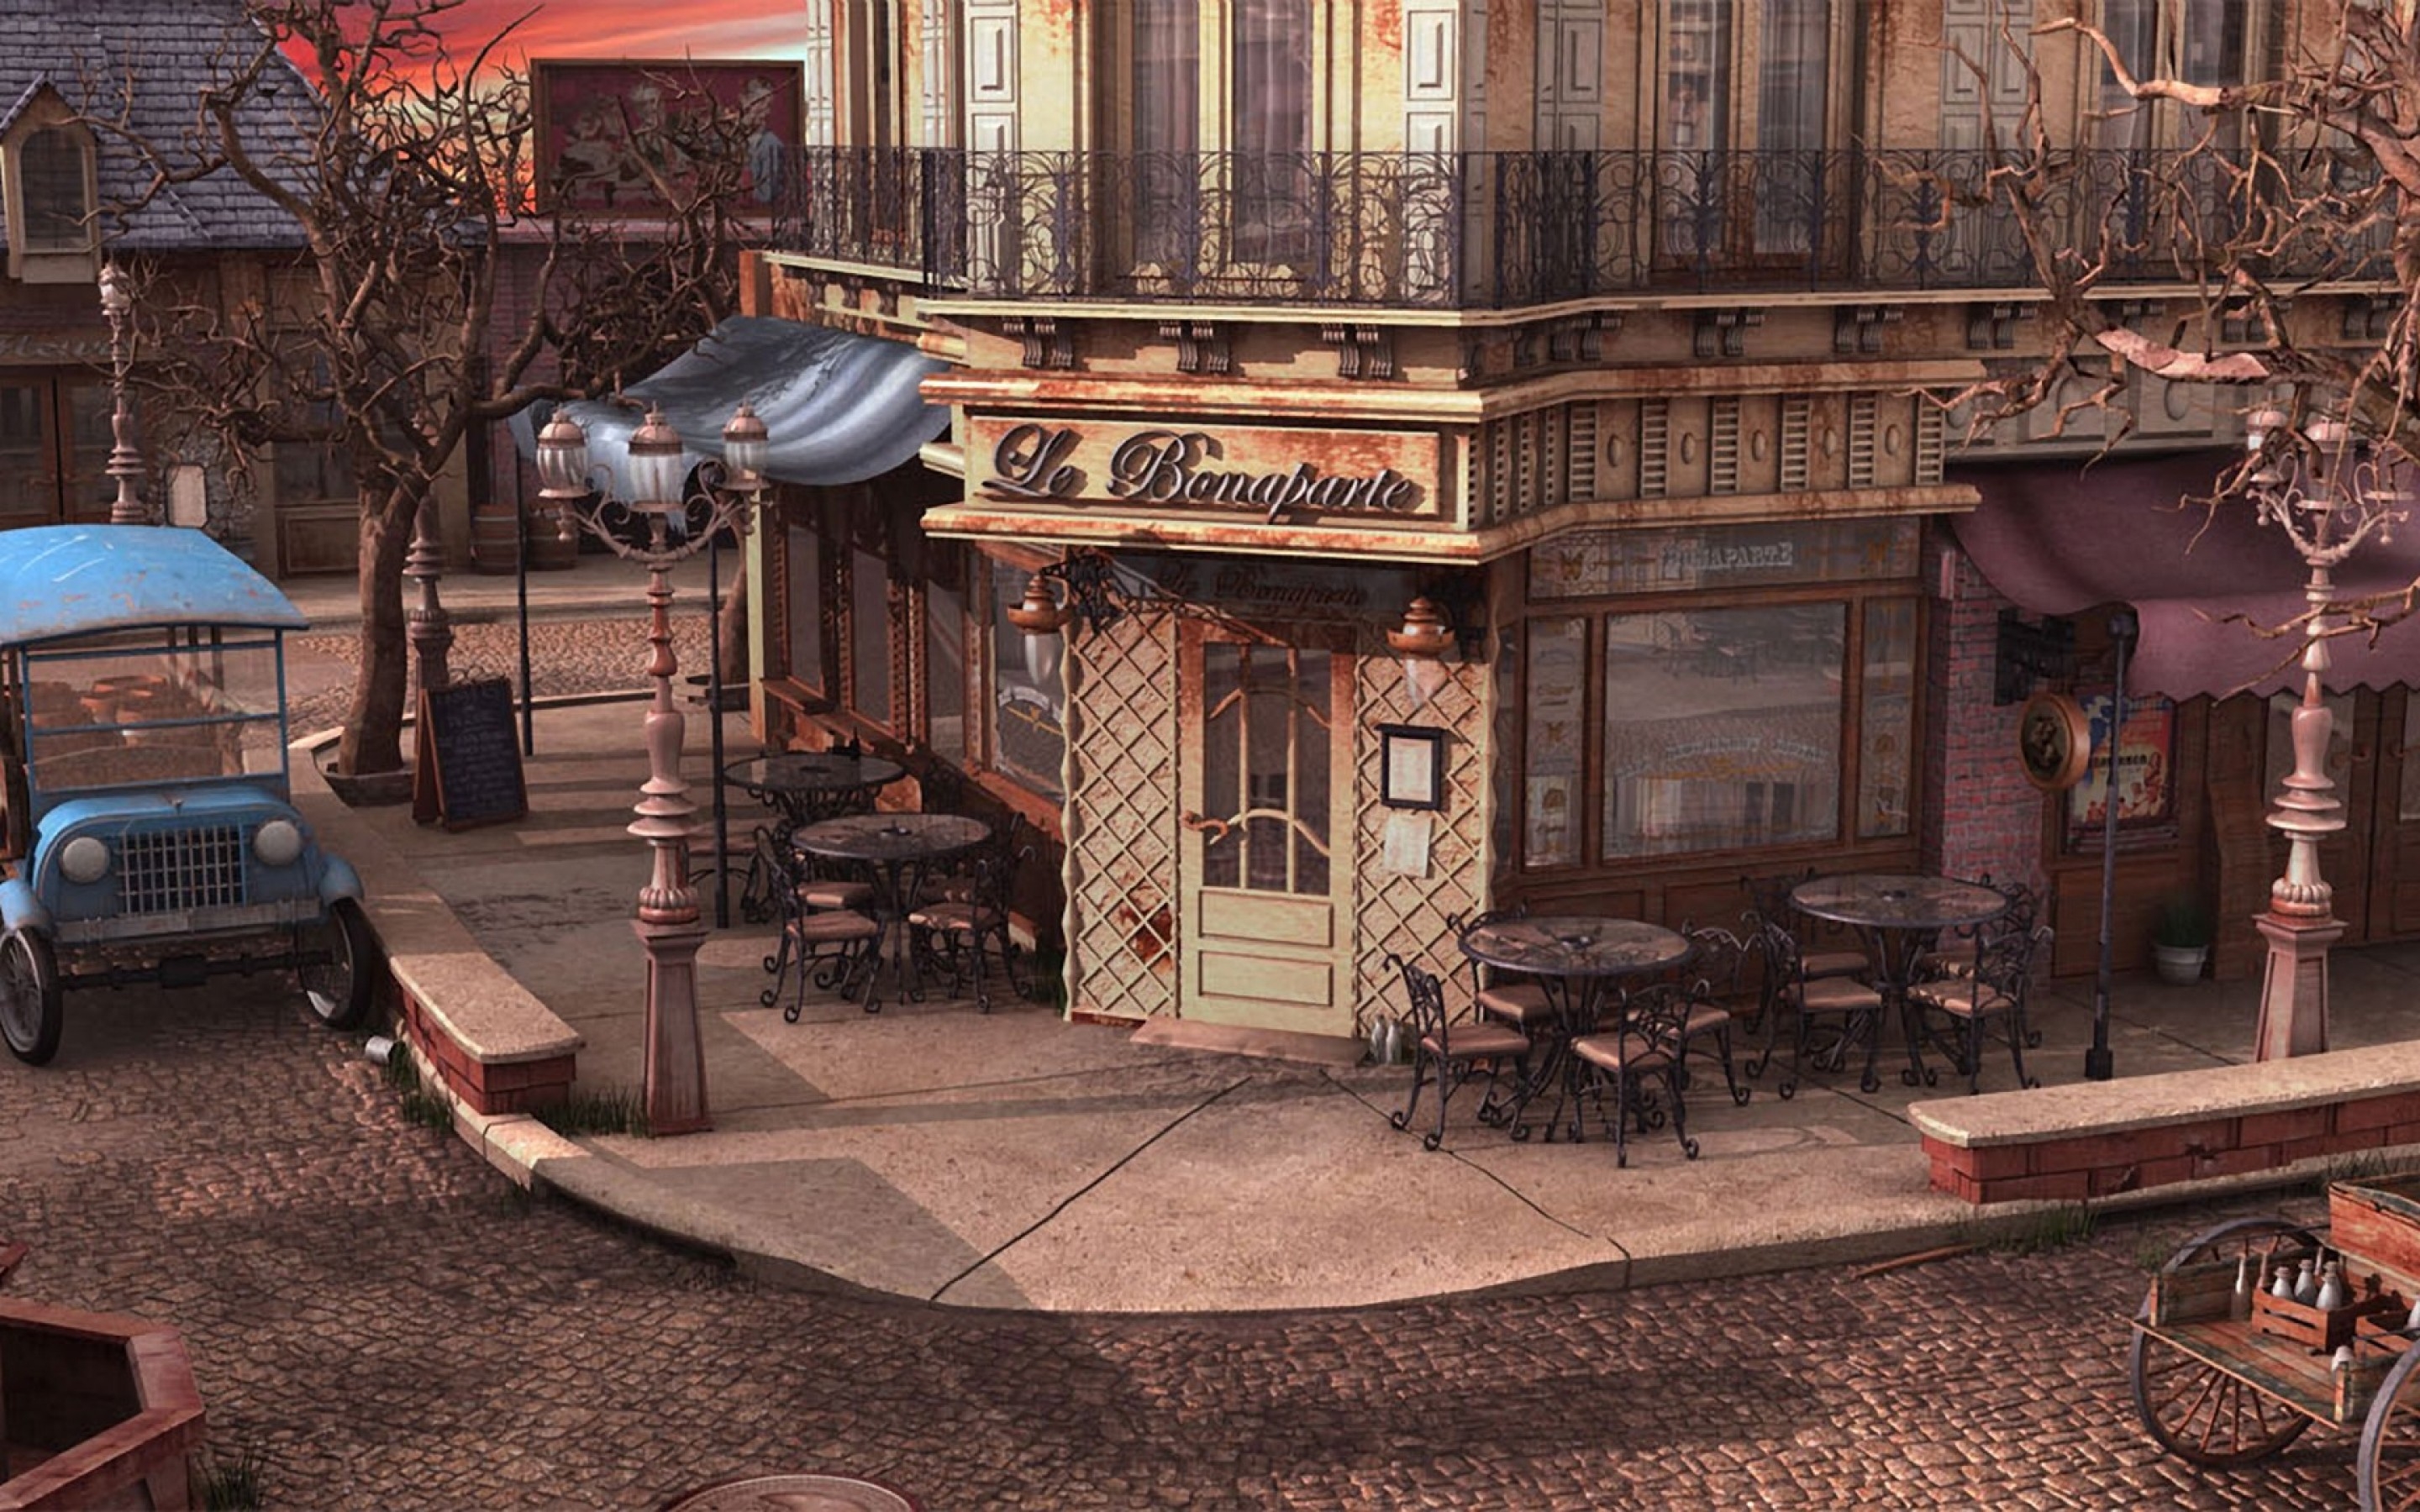 Кафе на улице на телефон. Кафе в стиле ретро. Кофейня в Старом стиле. Улично кафе в старинном городе. Французское кафе.